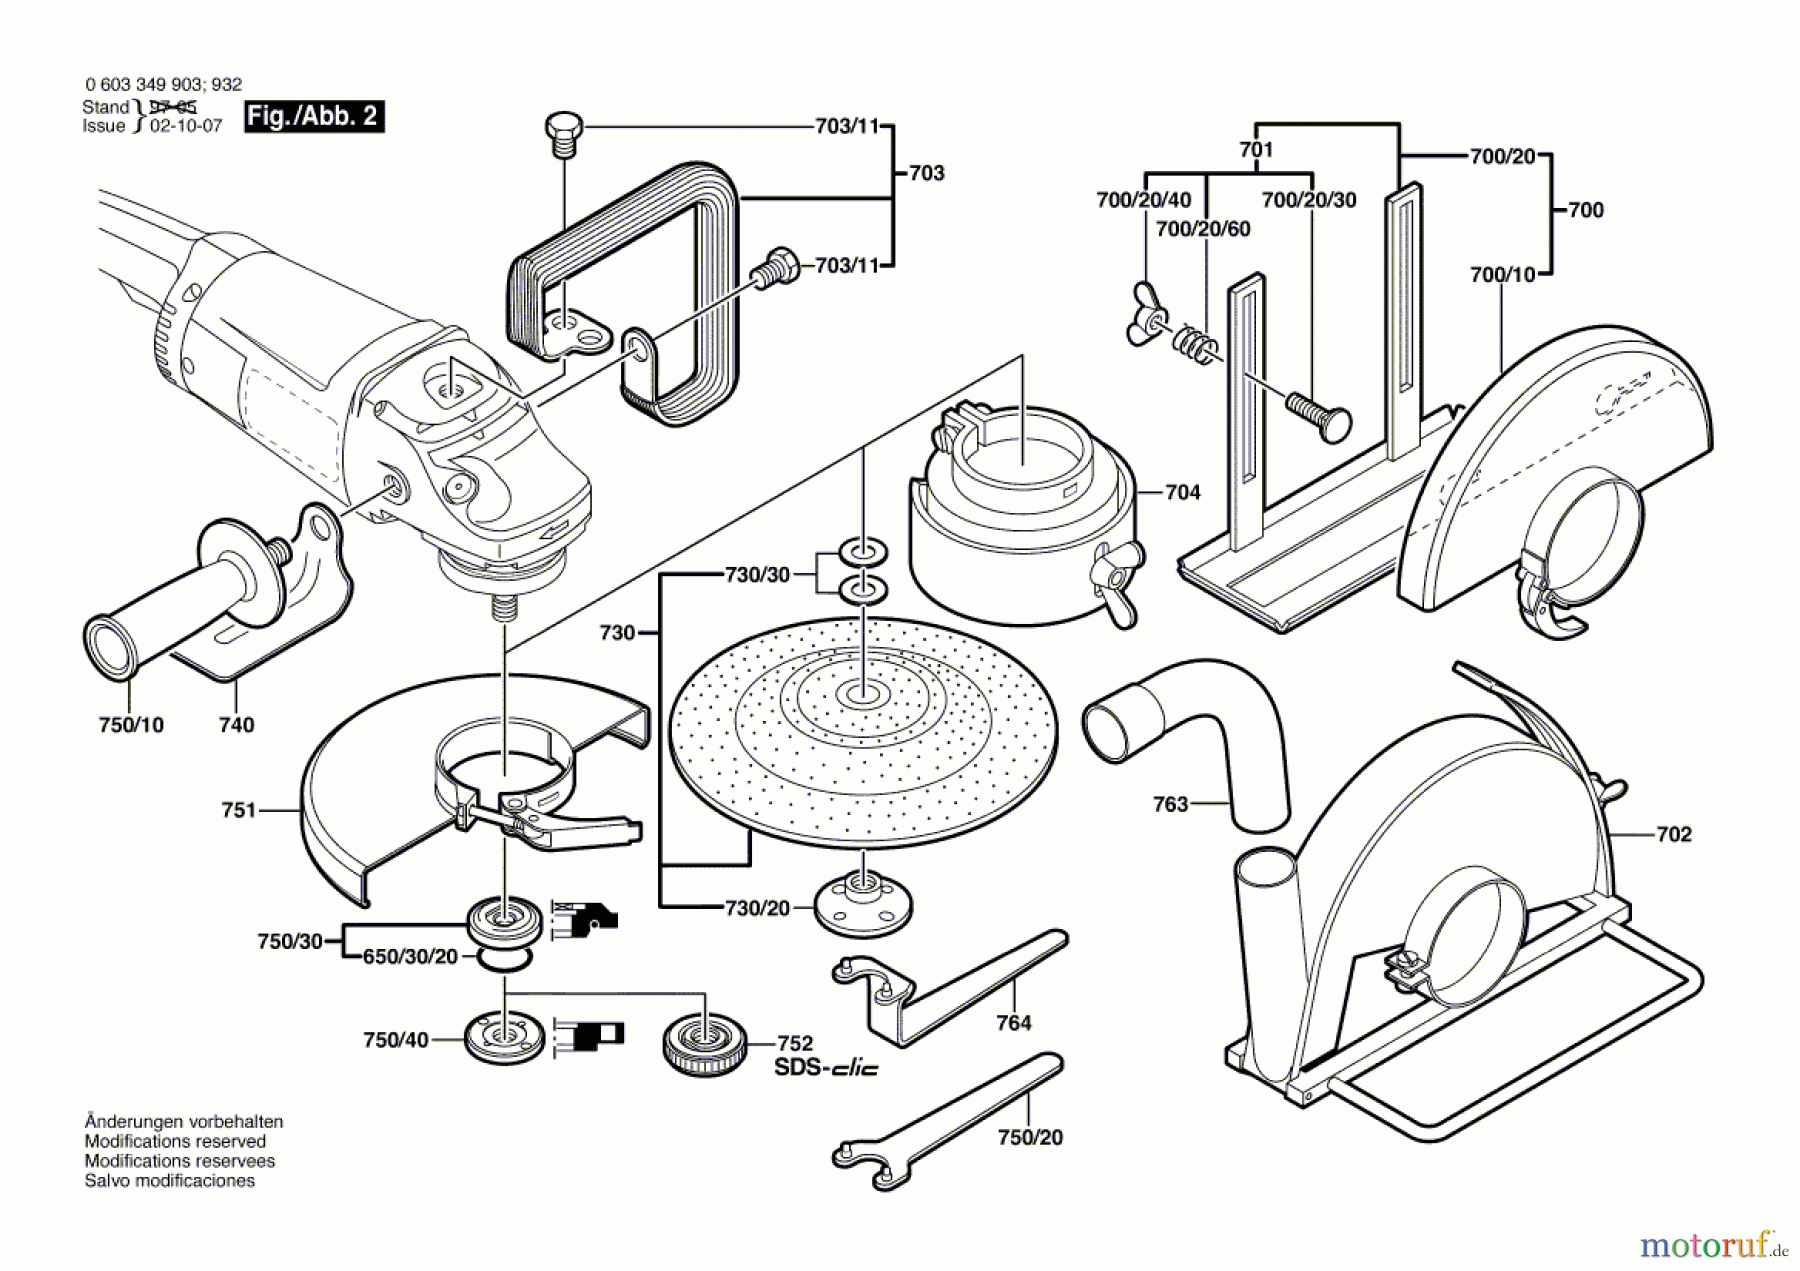  Bosch Werkzeug Winkelschleifer PWS 20-230 Seite 2